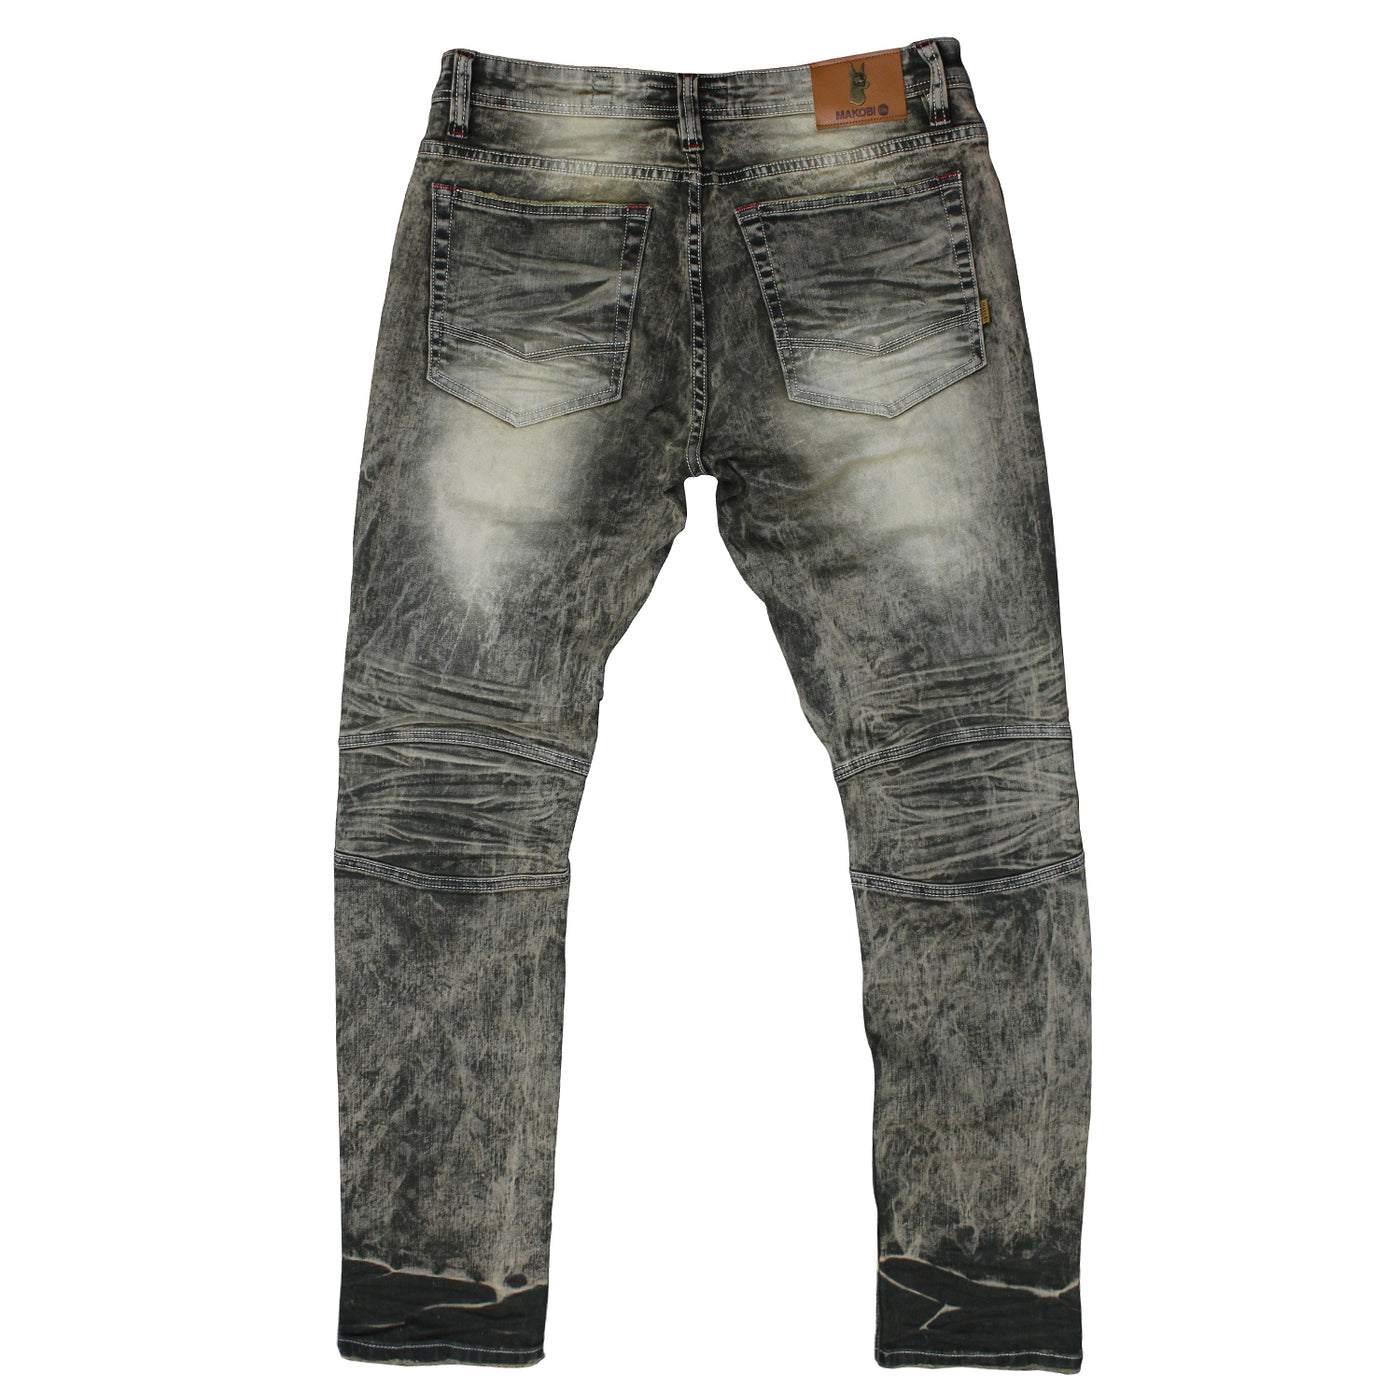 M1785 Makobi Atrani Denim Jeans - Olive